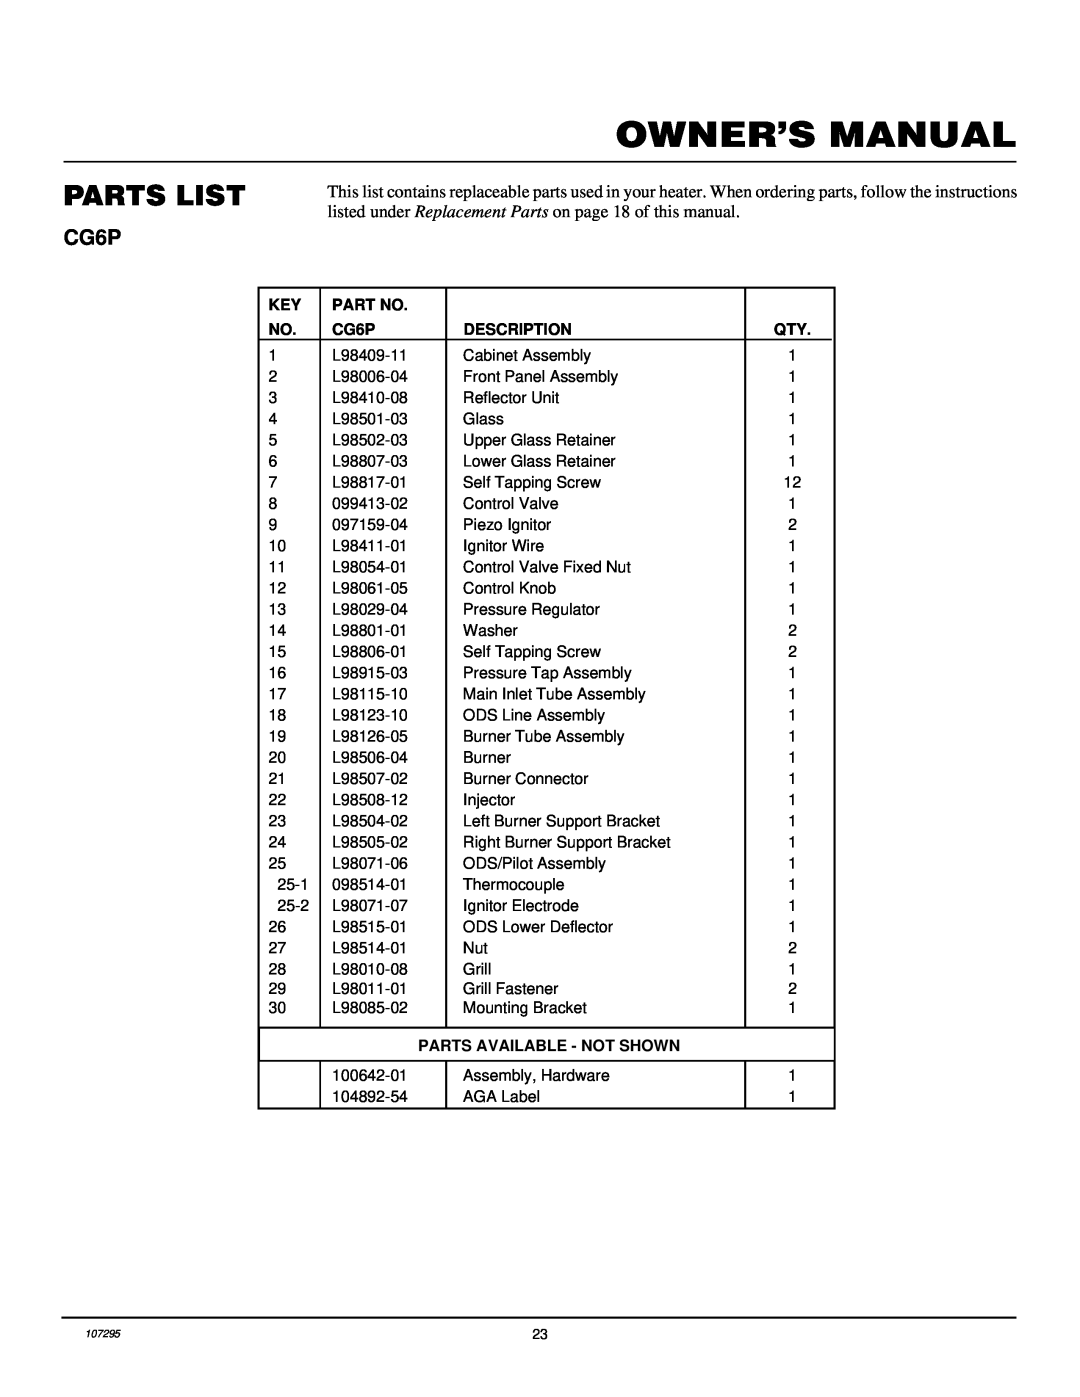 Desa CG10P, CGS10P installation manual Parts List, CG6P, Description, Parts Available - Not Shown 